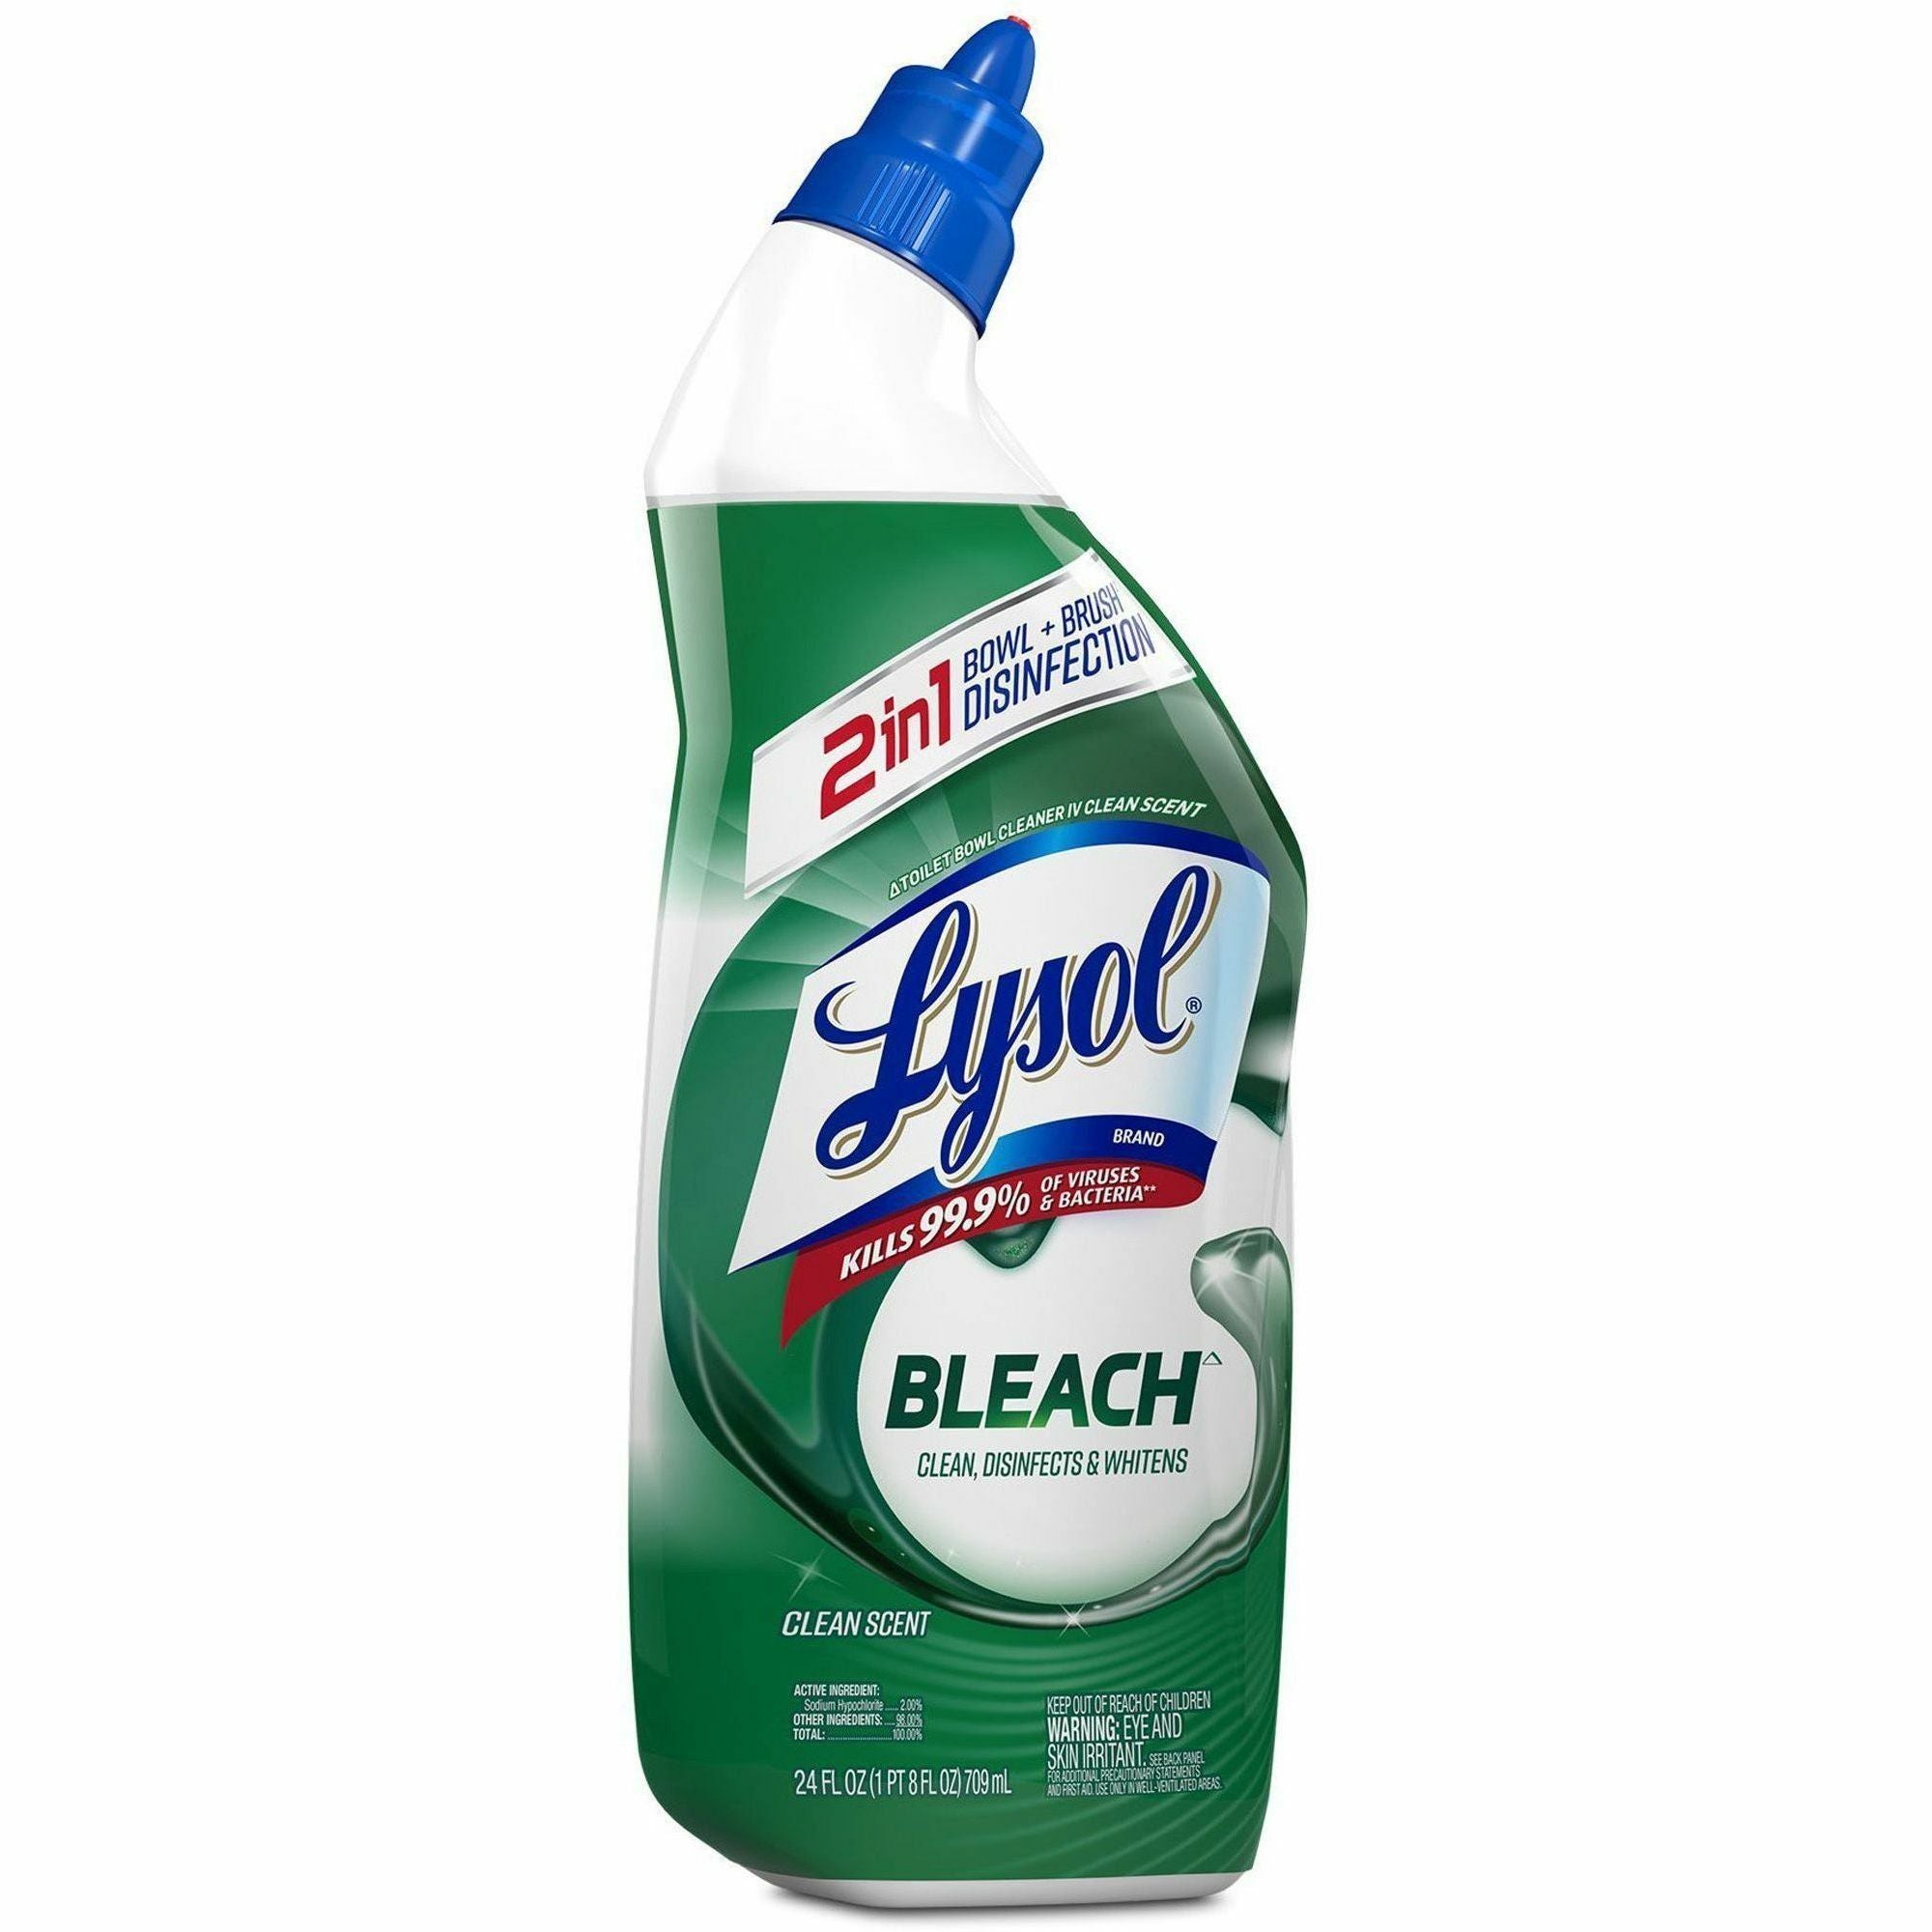 lysol-bleach-toilet-bowl-cleaner-24-fl-oz-08-quartbottle-9-carton-disinfectant-deodorize-blue_rac98014ct - 4